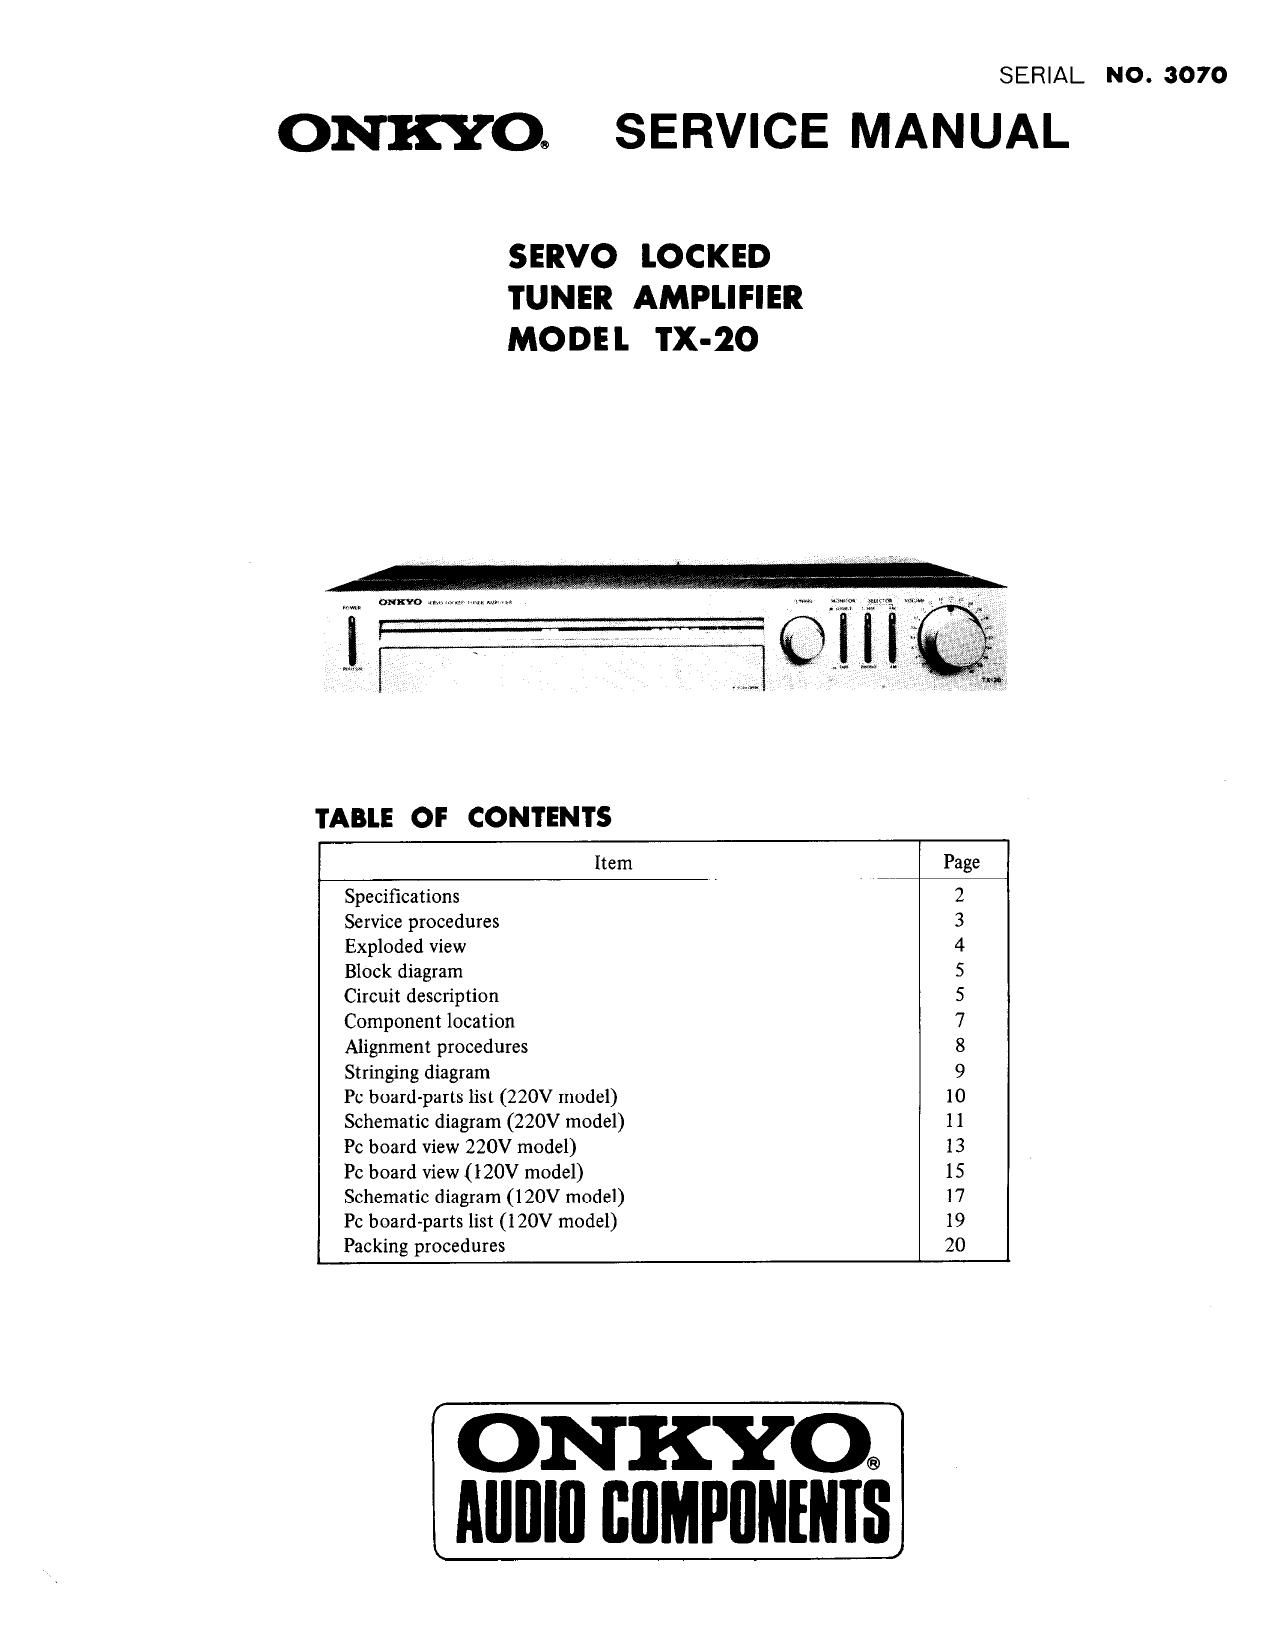 Onkyo TX 20 Service Manual